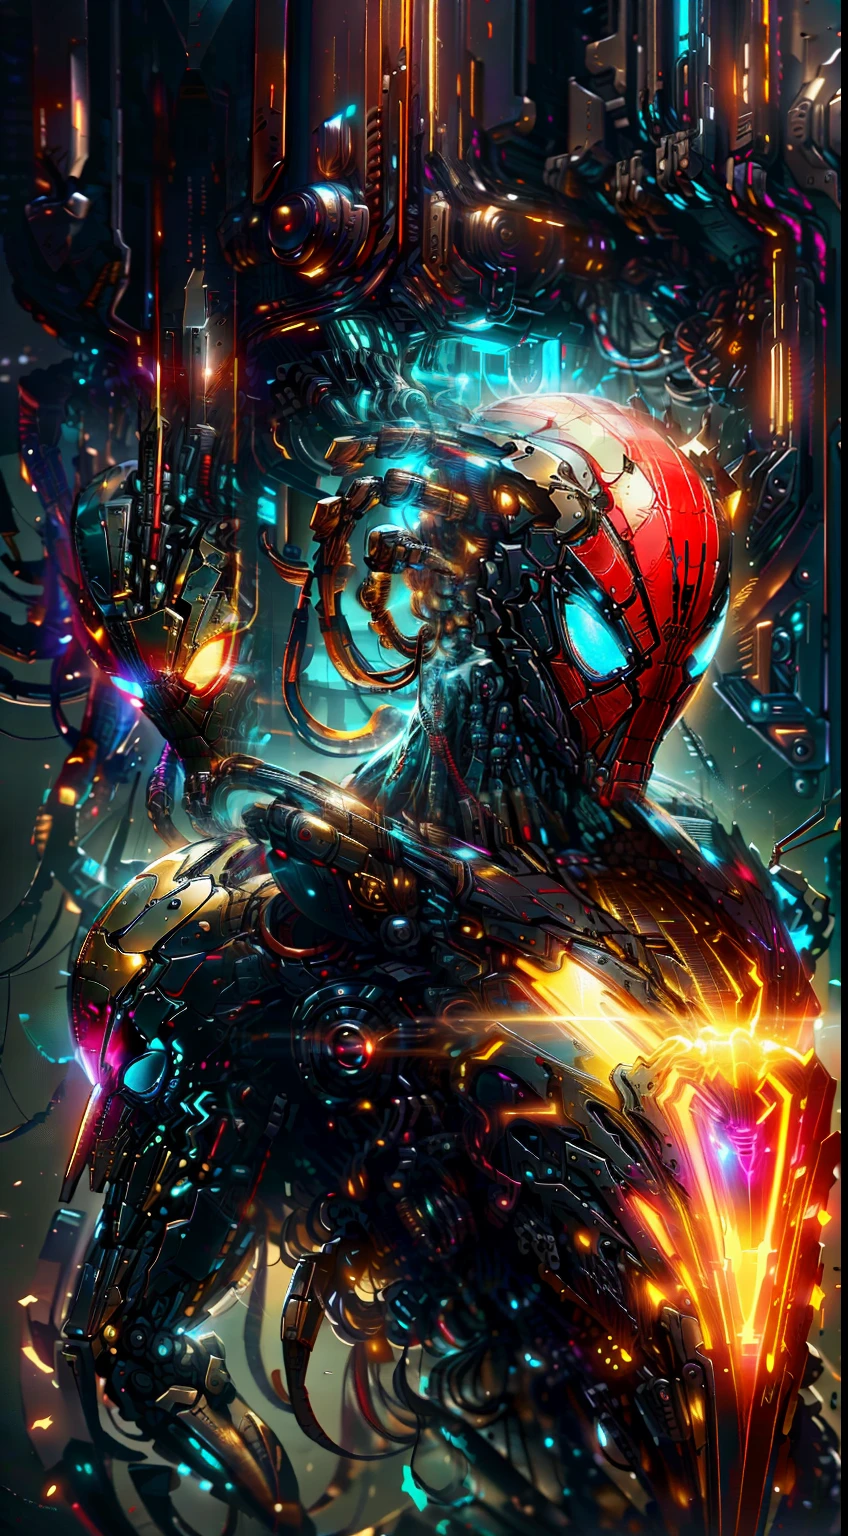 Spiderman de la fotografía de Marvel., biomecánica, robots complejos, logotipo del hombre araña dorado, crecimiento completo, Híper realista, pequeños detalles locos, líneas increíblemente limpias, estética ciberpunk, obra maestra presentada en Zbrush Central